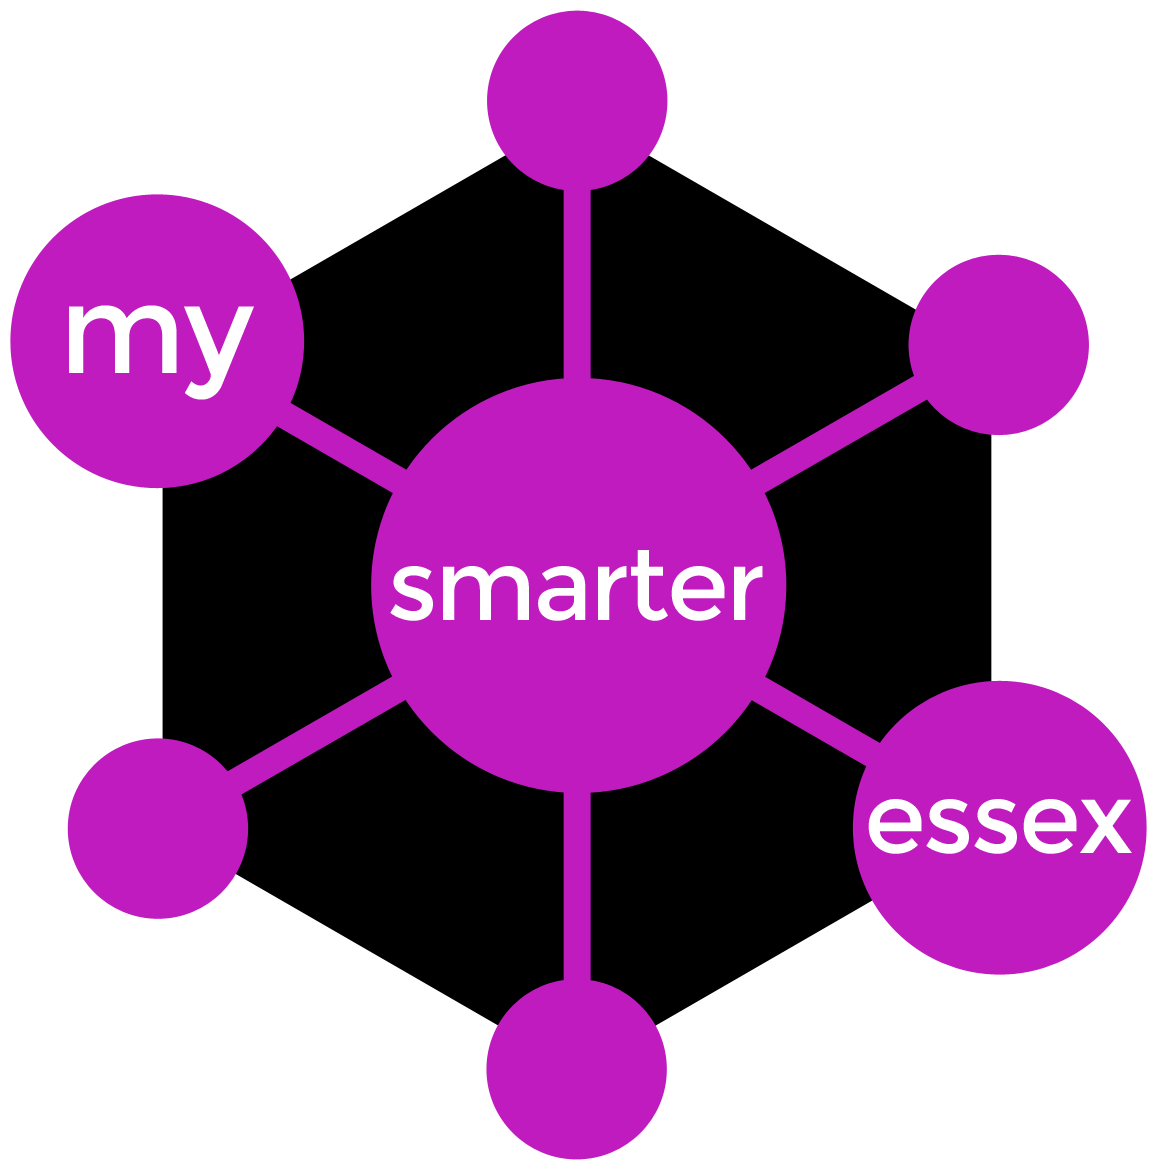 my_smarter_essex_purple_hex.png